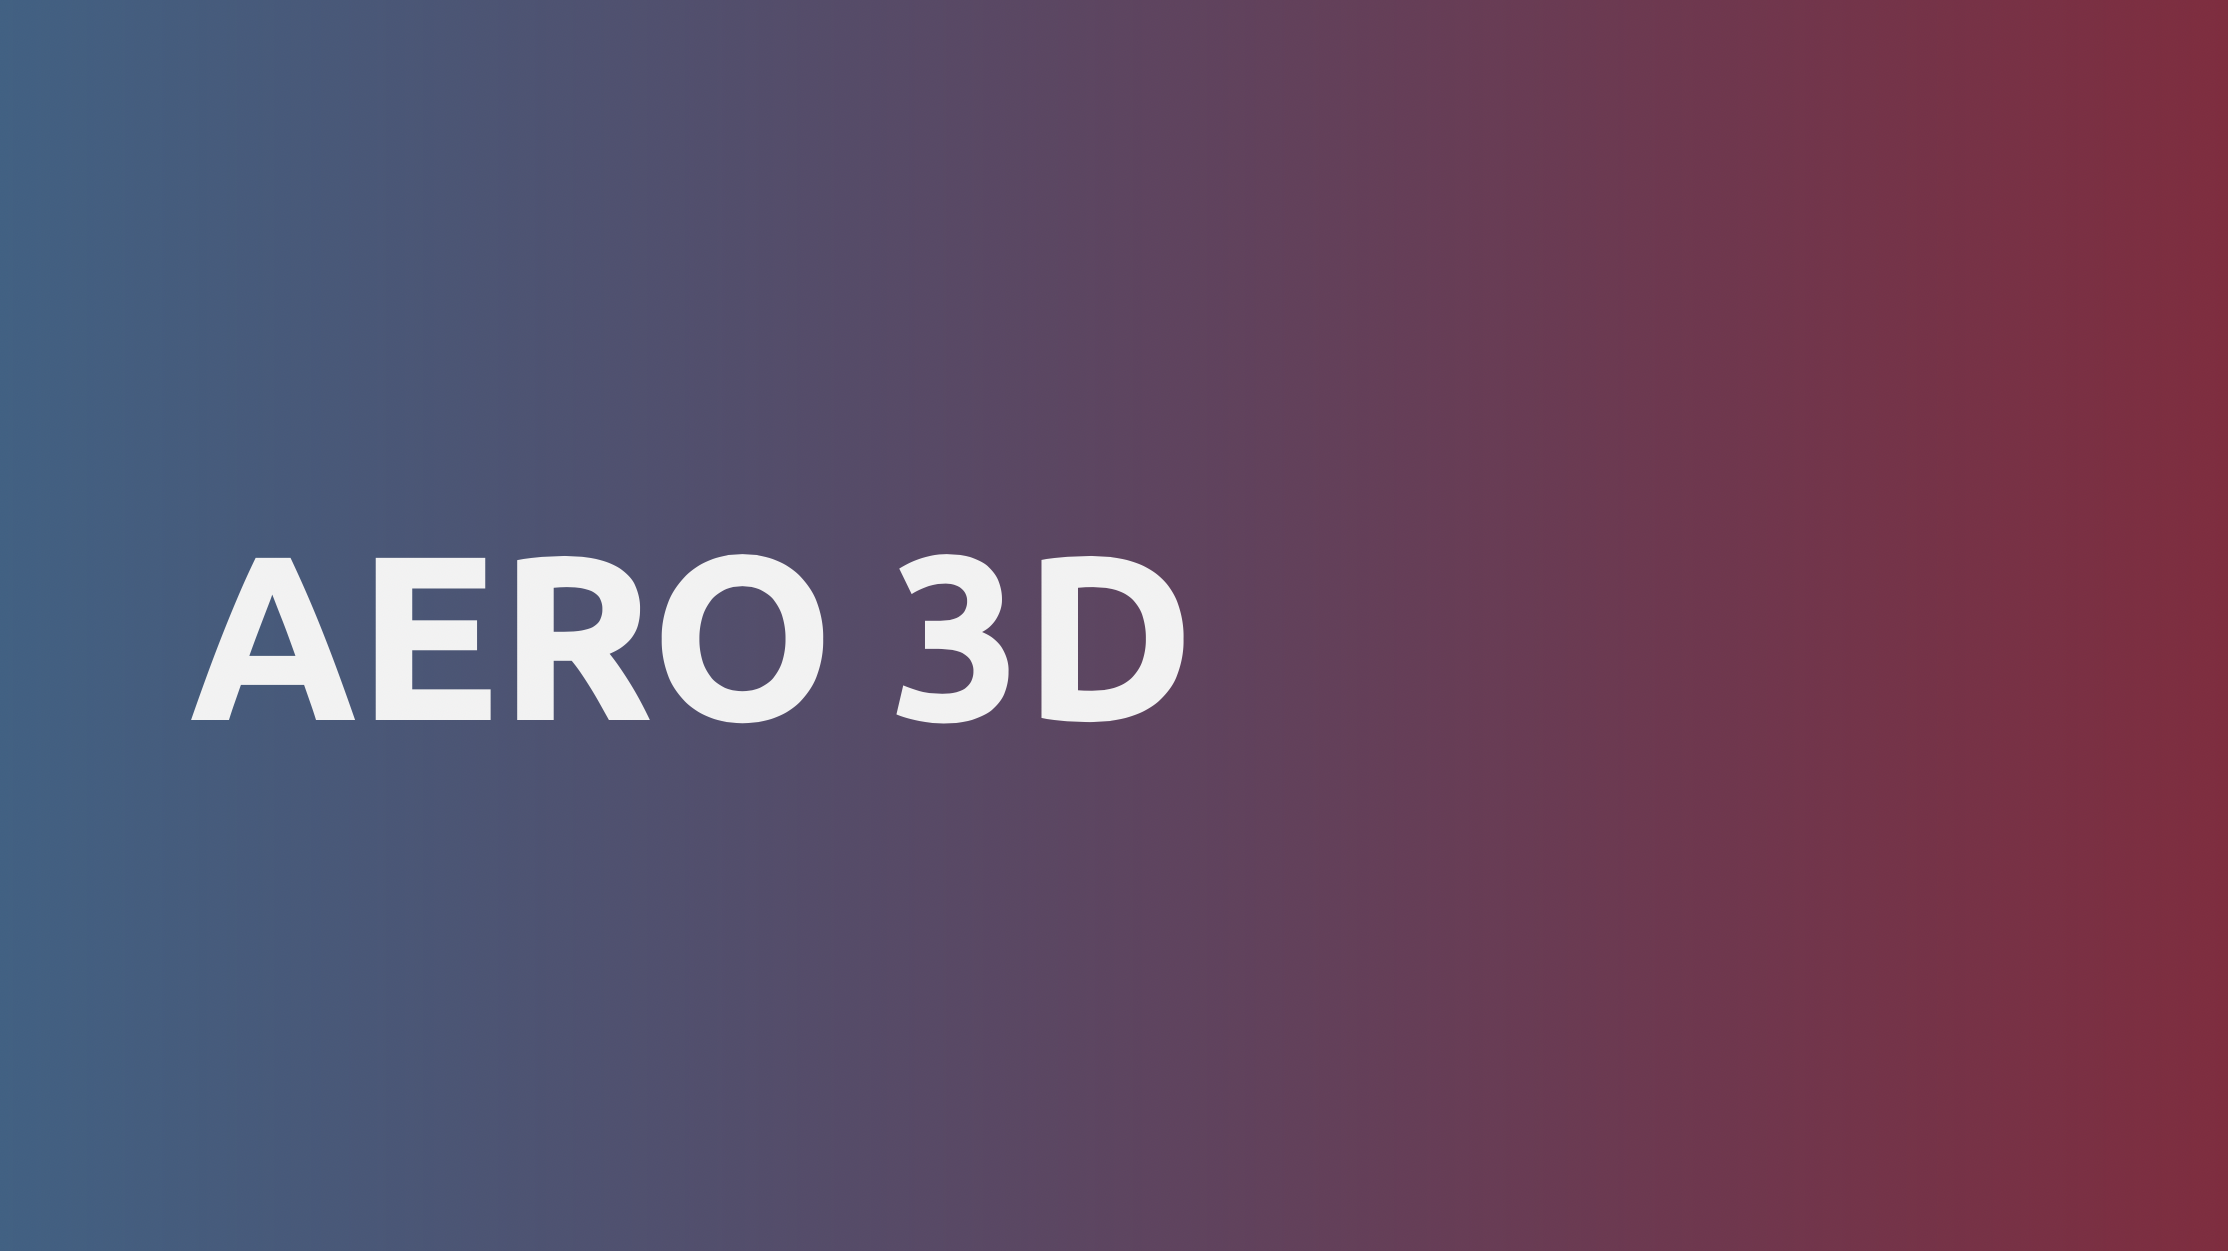 AERO 3D